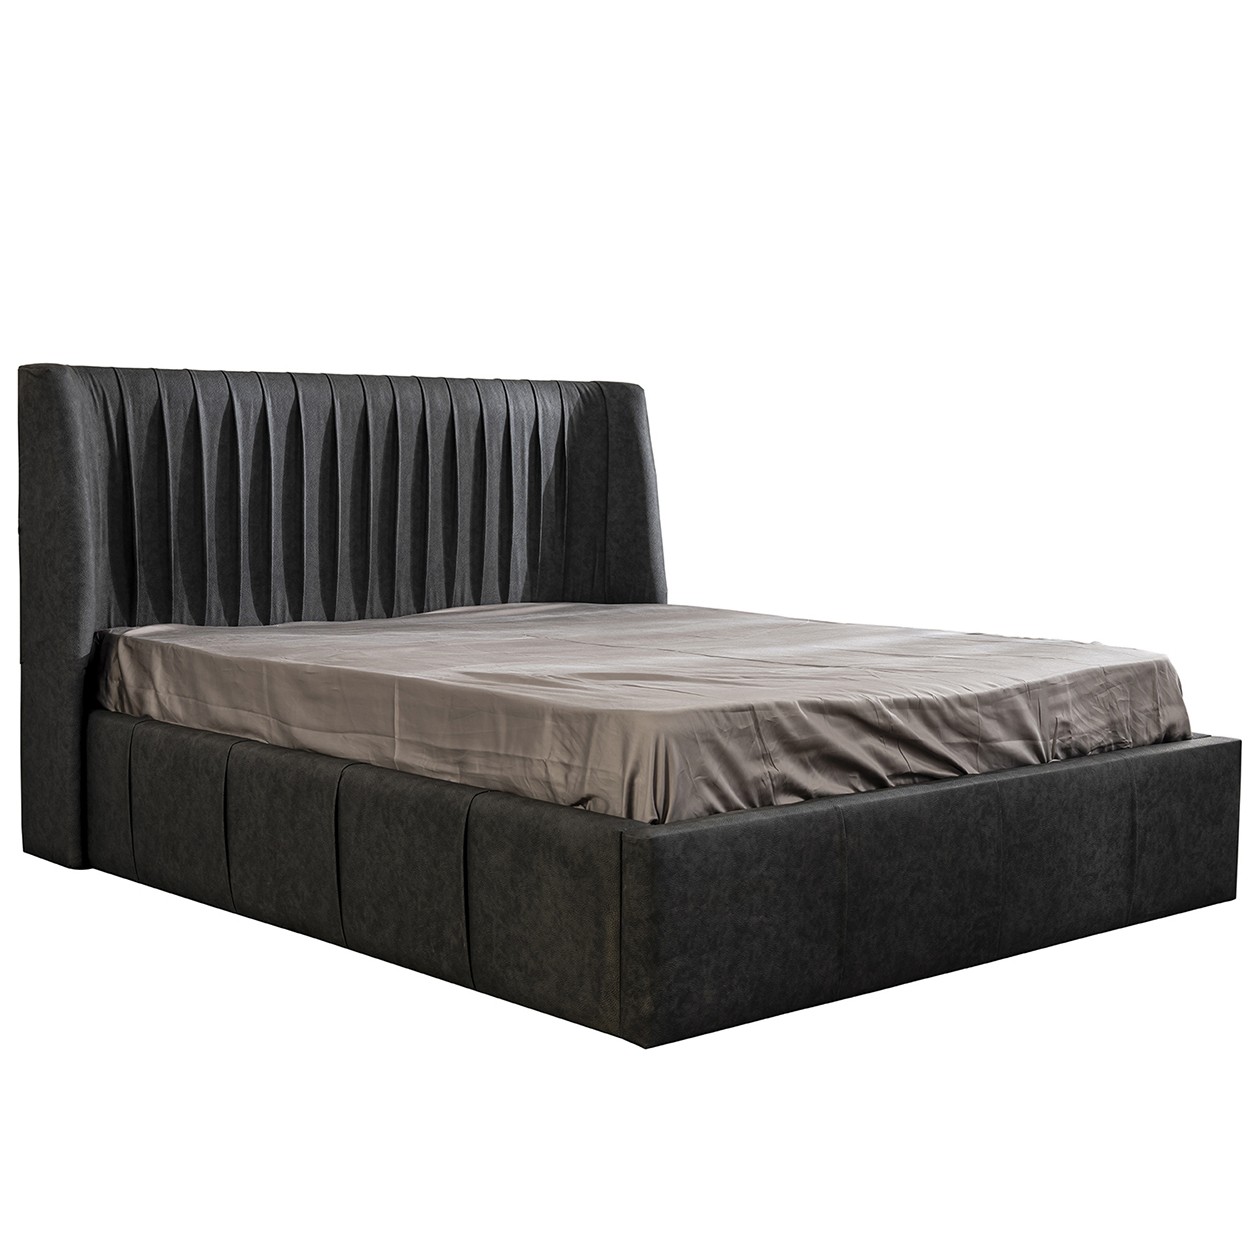 Prada Bed Without Storage 160x200 cm